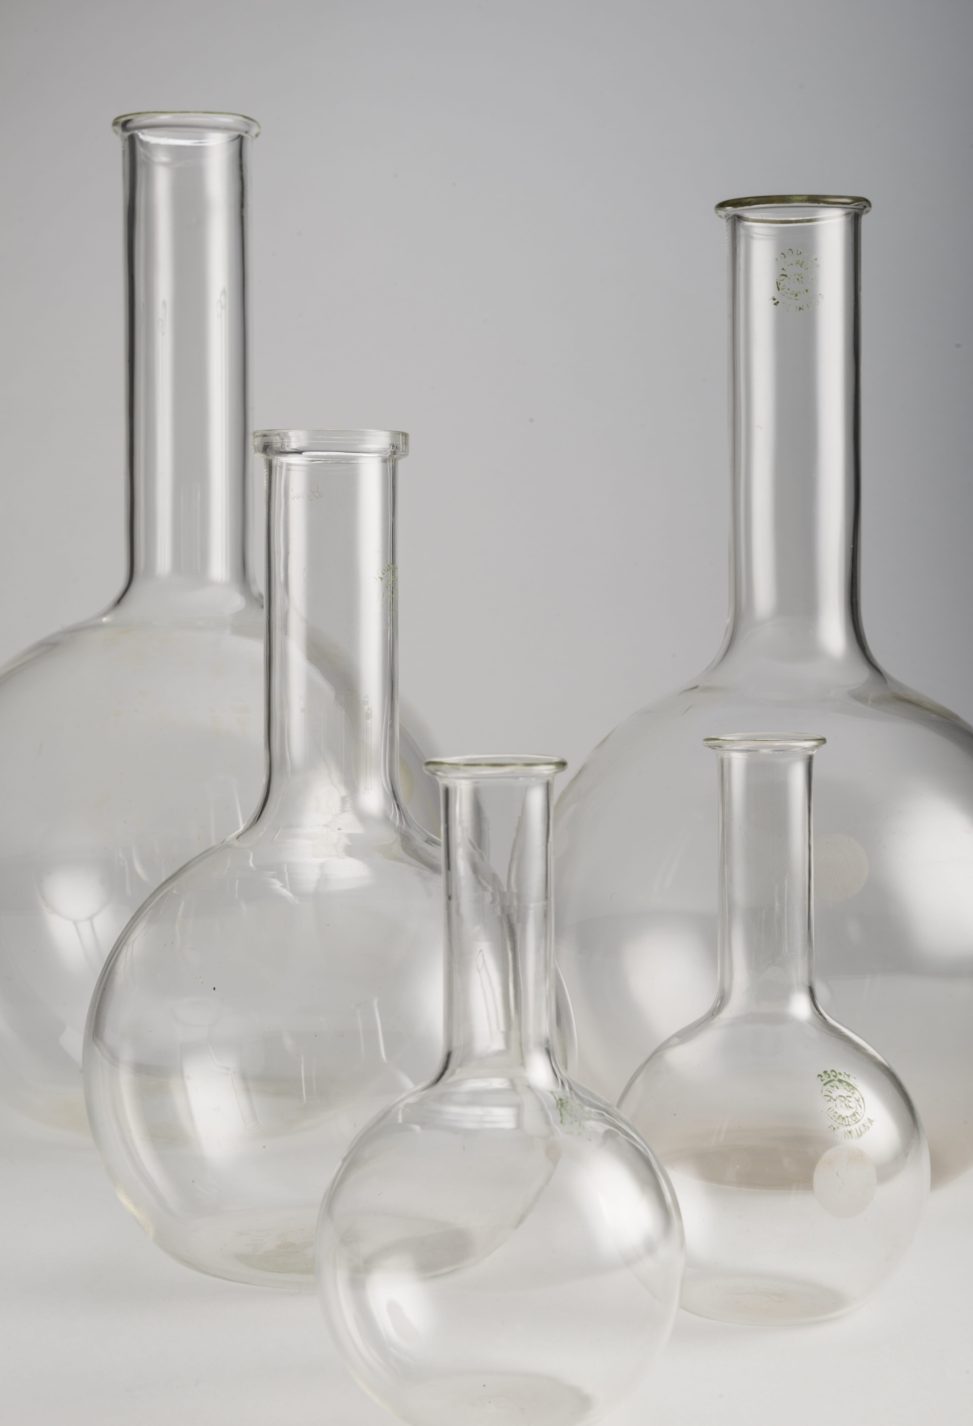 Cinq ballons de laboratoire à fond plat, tous en verre transparent, dotés d’une base sphérique et d’un col cylindrique. Deux ballons de 250 ml, un de 1L, un de 2L et un de 3L